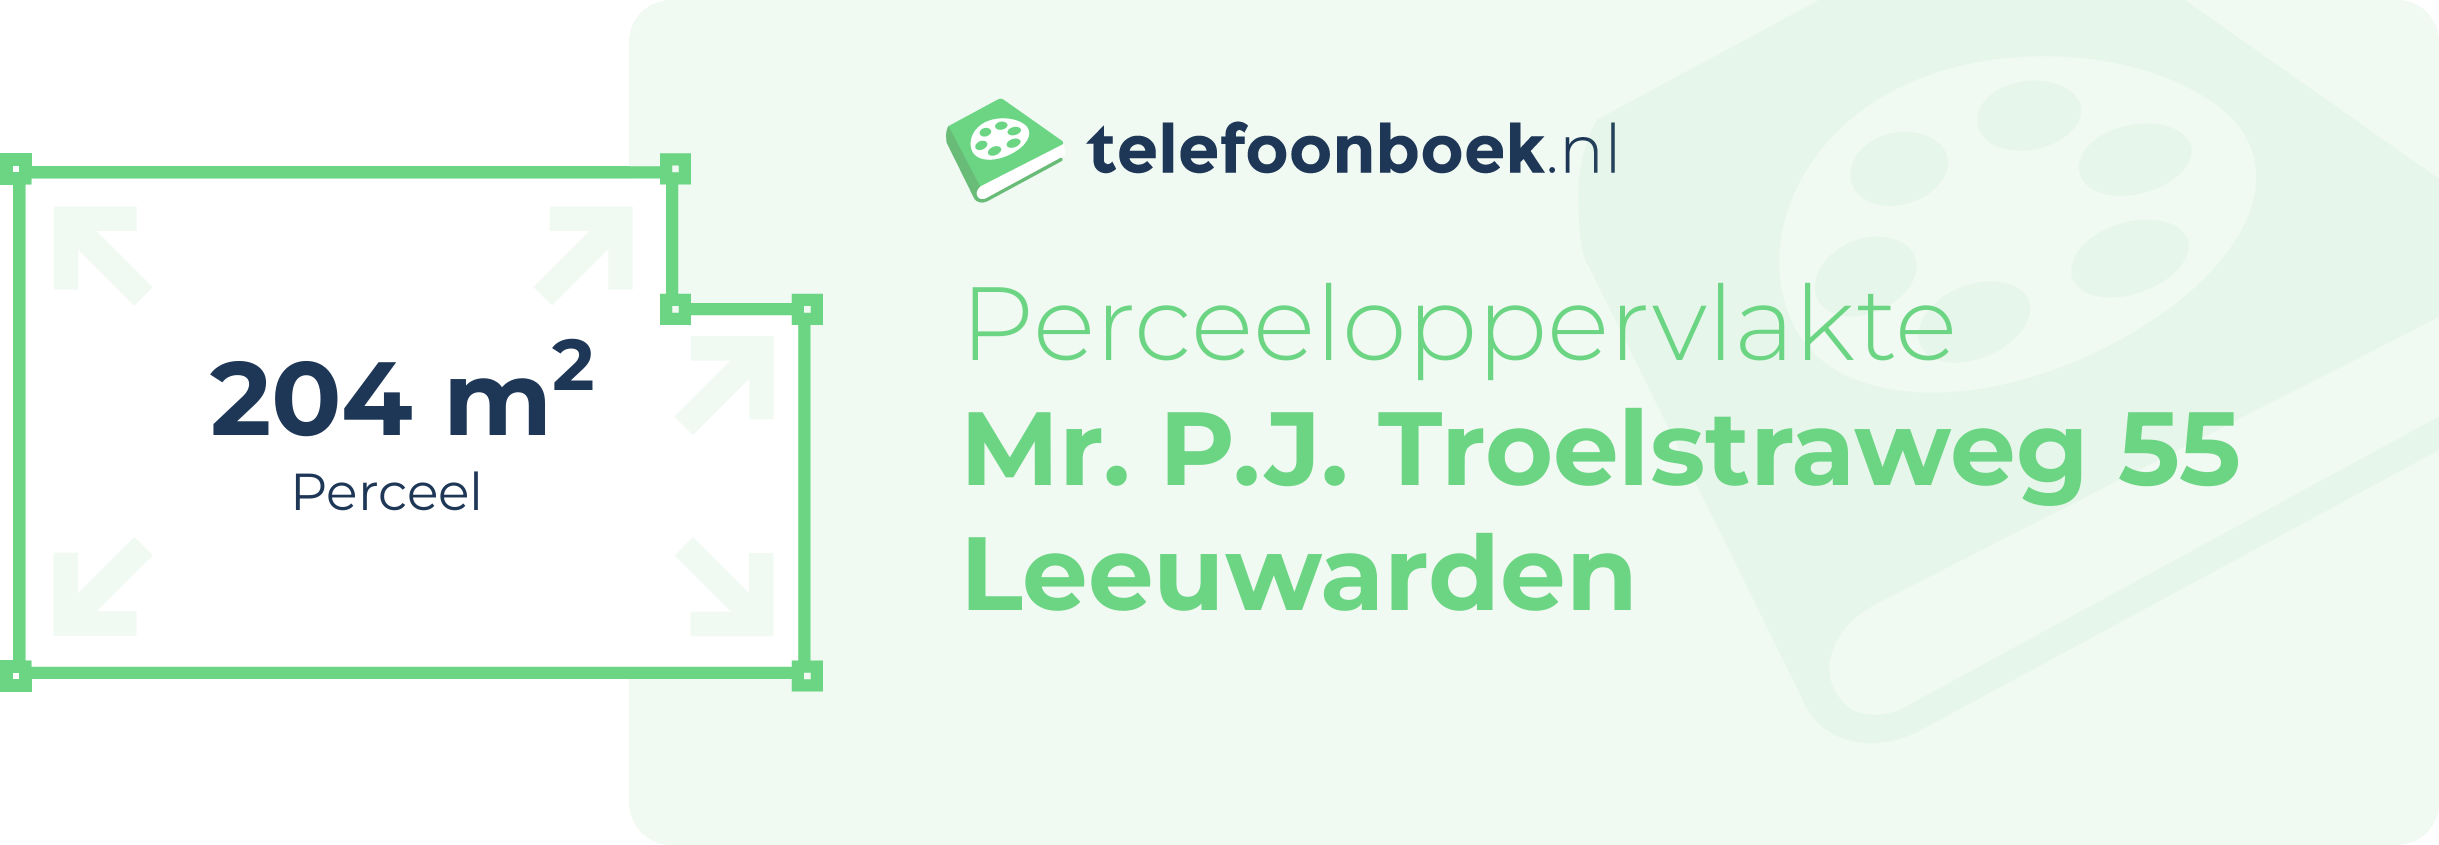 Perceeloppervlakte Mr. P.J. Troelstraweg 55 Leeuwarden